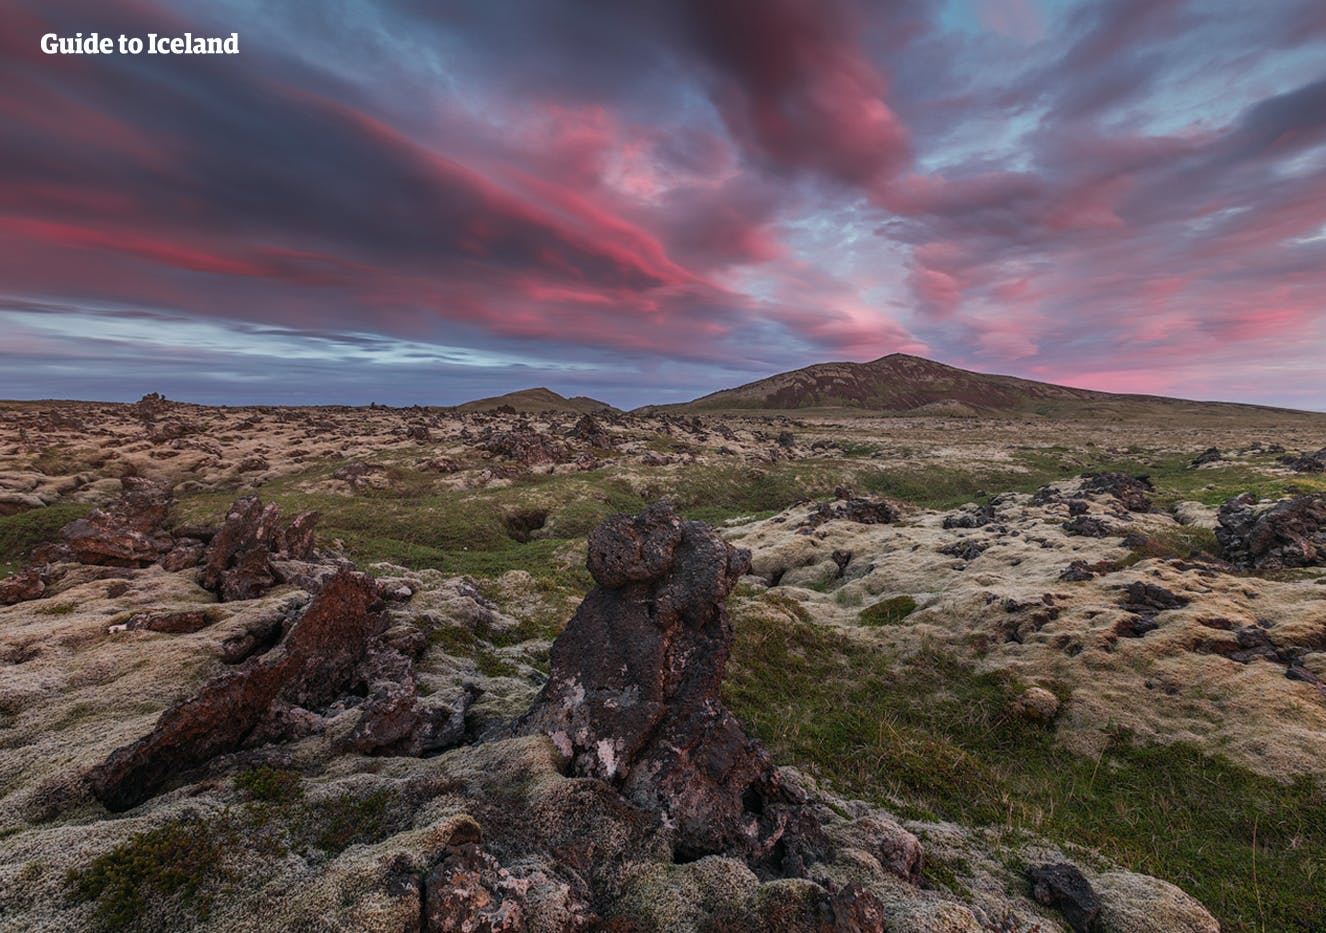 En lavamark på det vestlige Island.